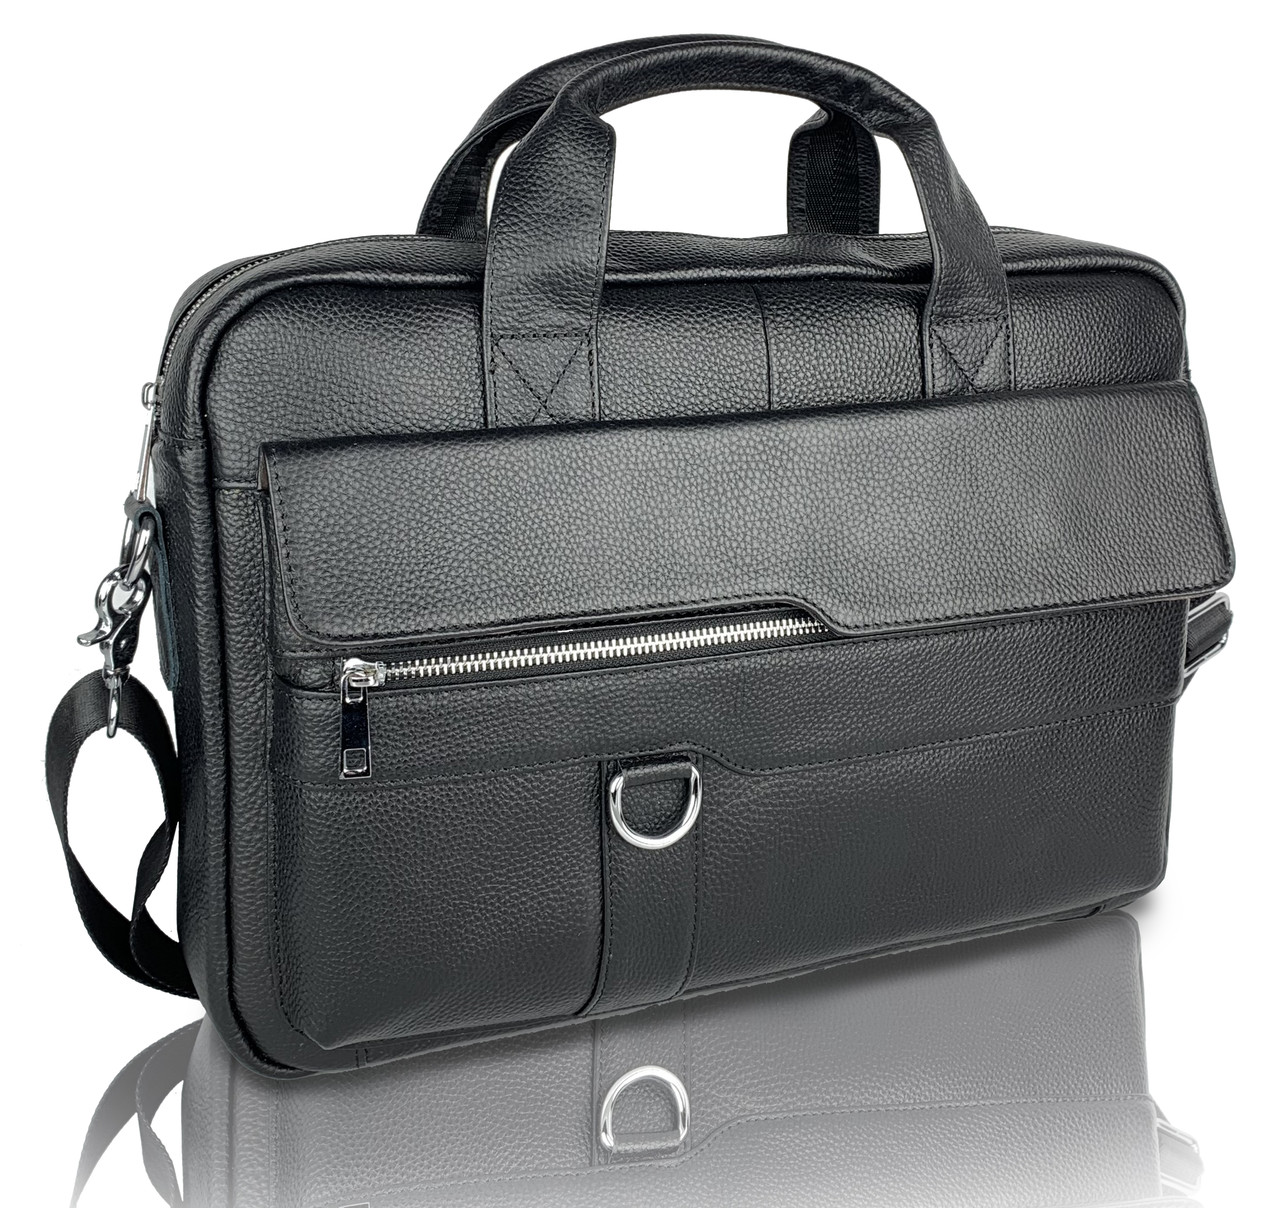 Кожана сумка для ноутбука і документів чорна Tiding Bag чоловічий портфель для А4, фото 1